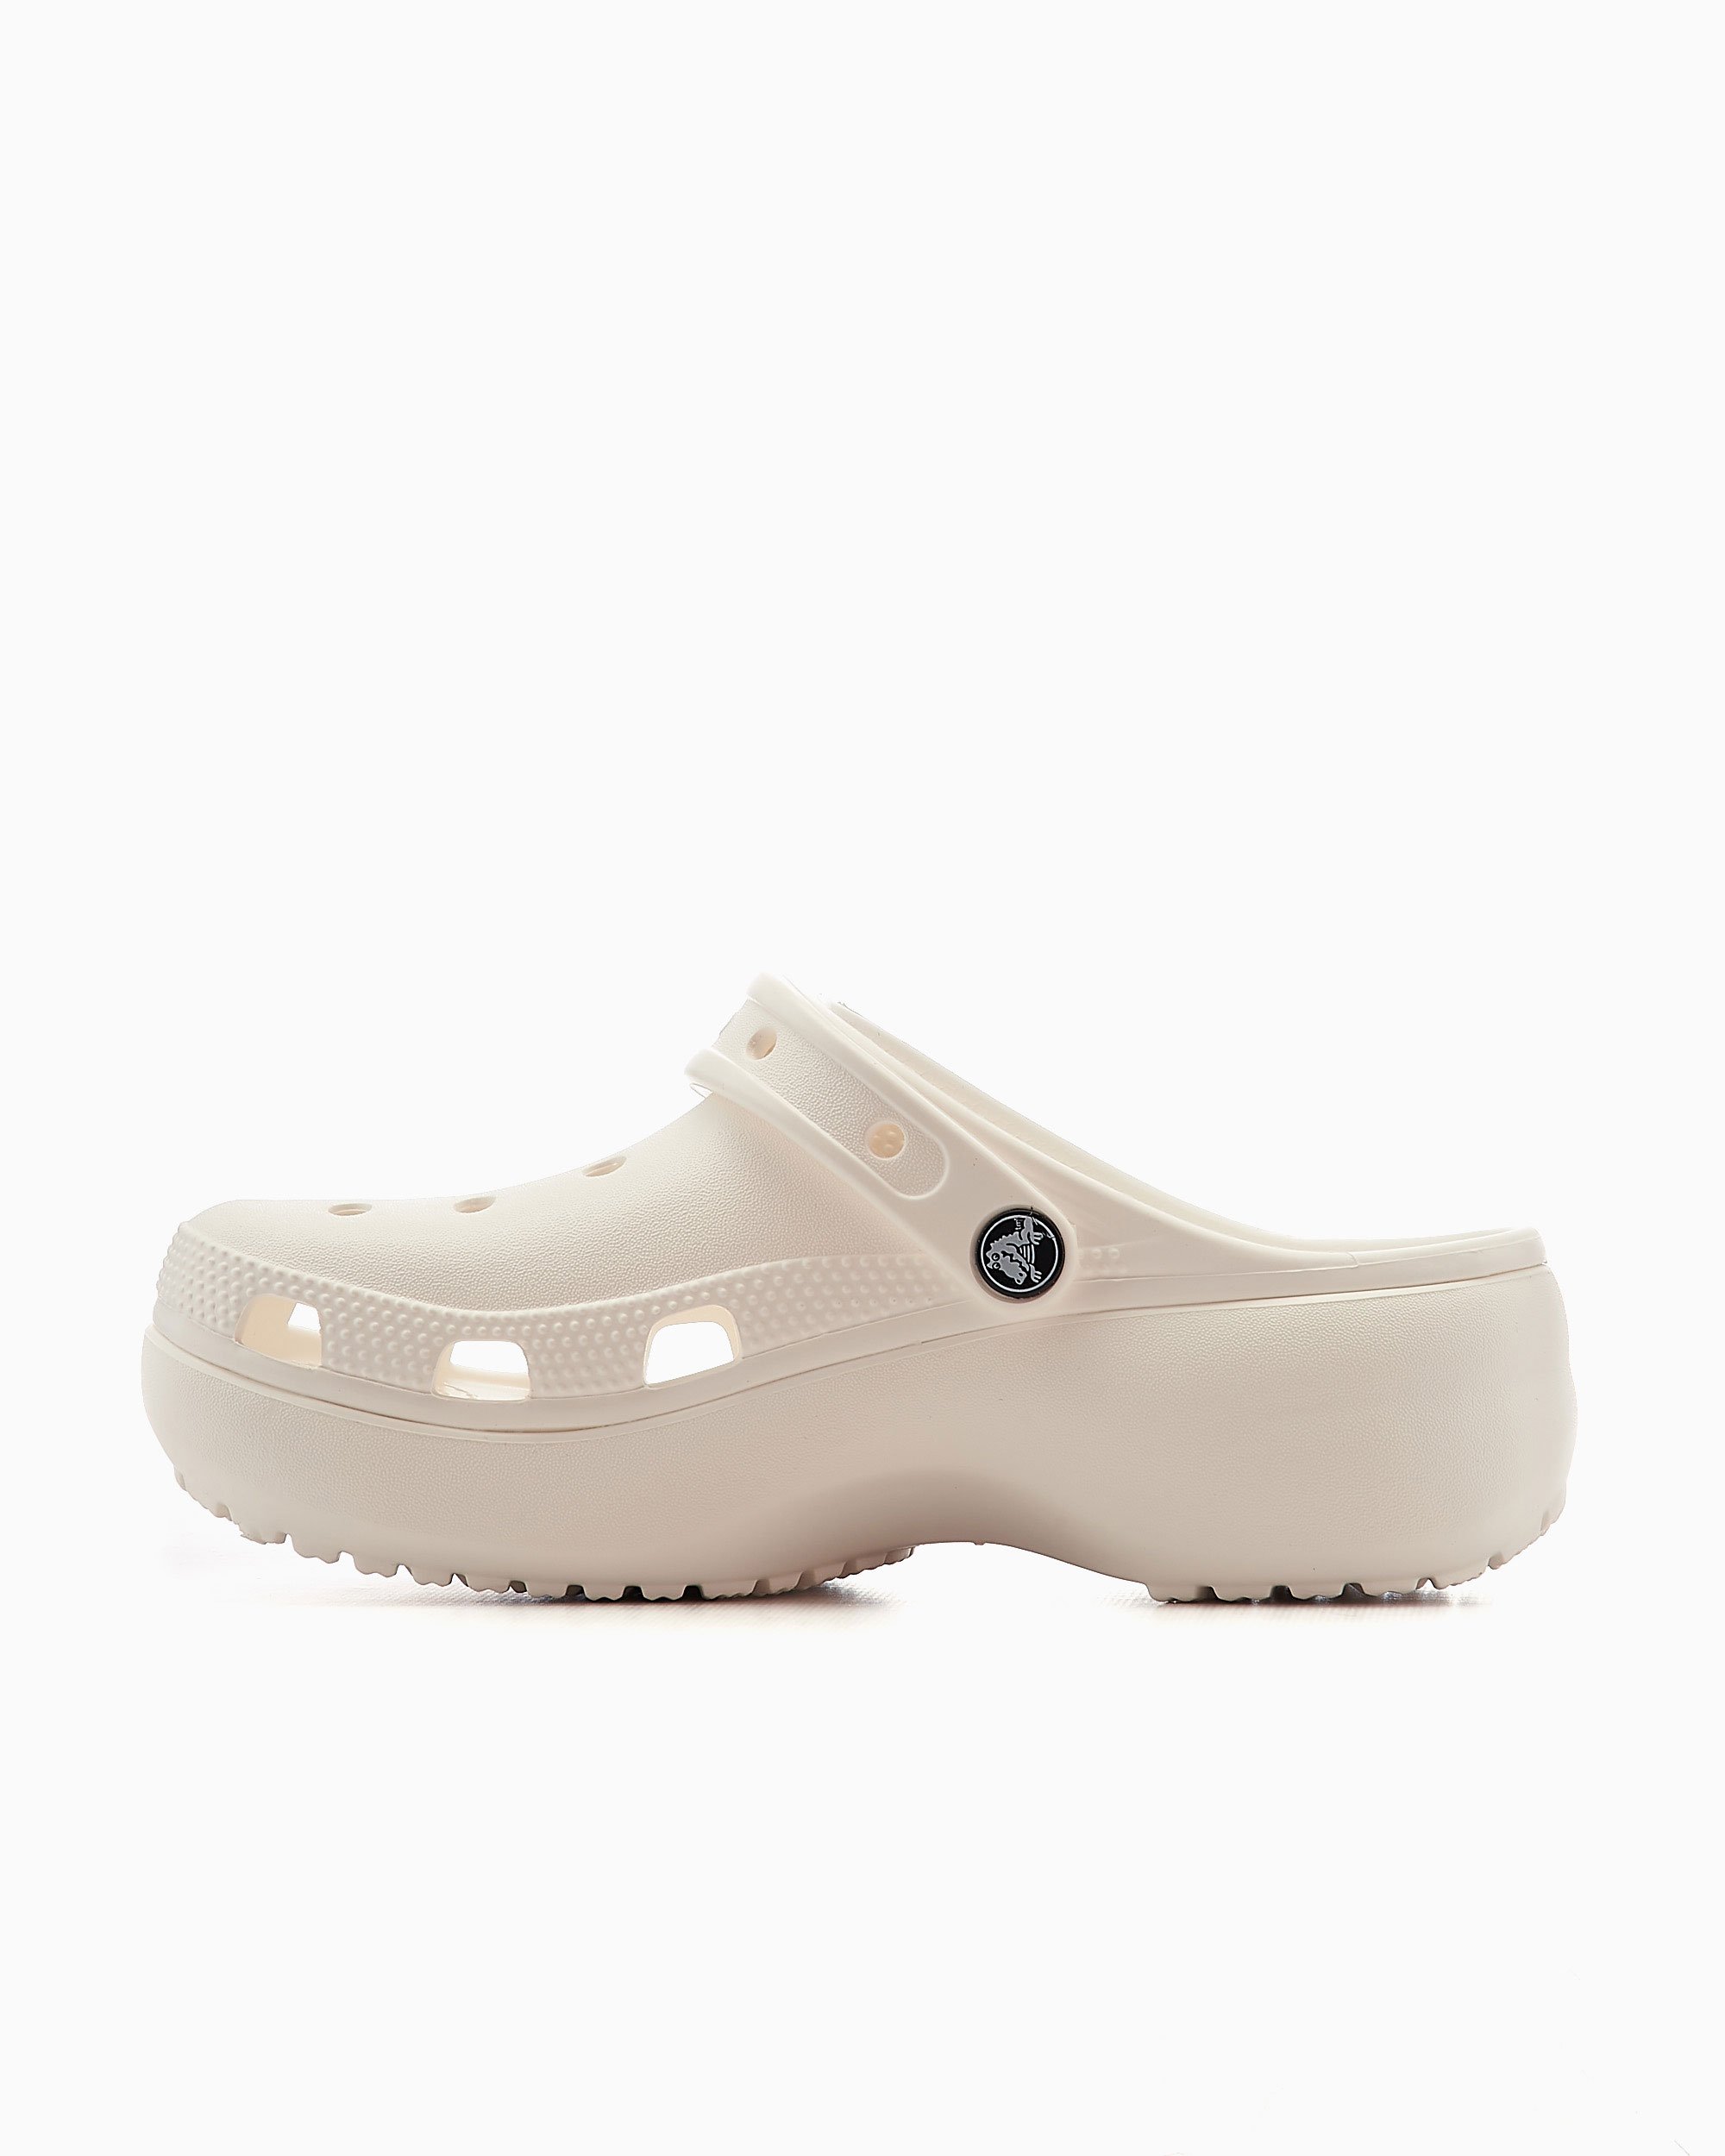 Verval zelfmoord wortel Crocs Women's Classic Platform Clog Wit 206750-100B| Shop Online bij  FOOTDISTRICT